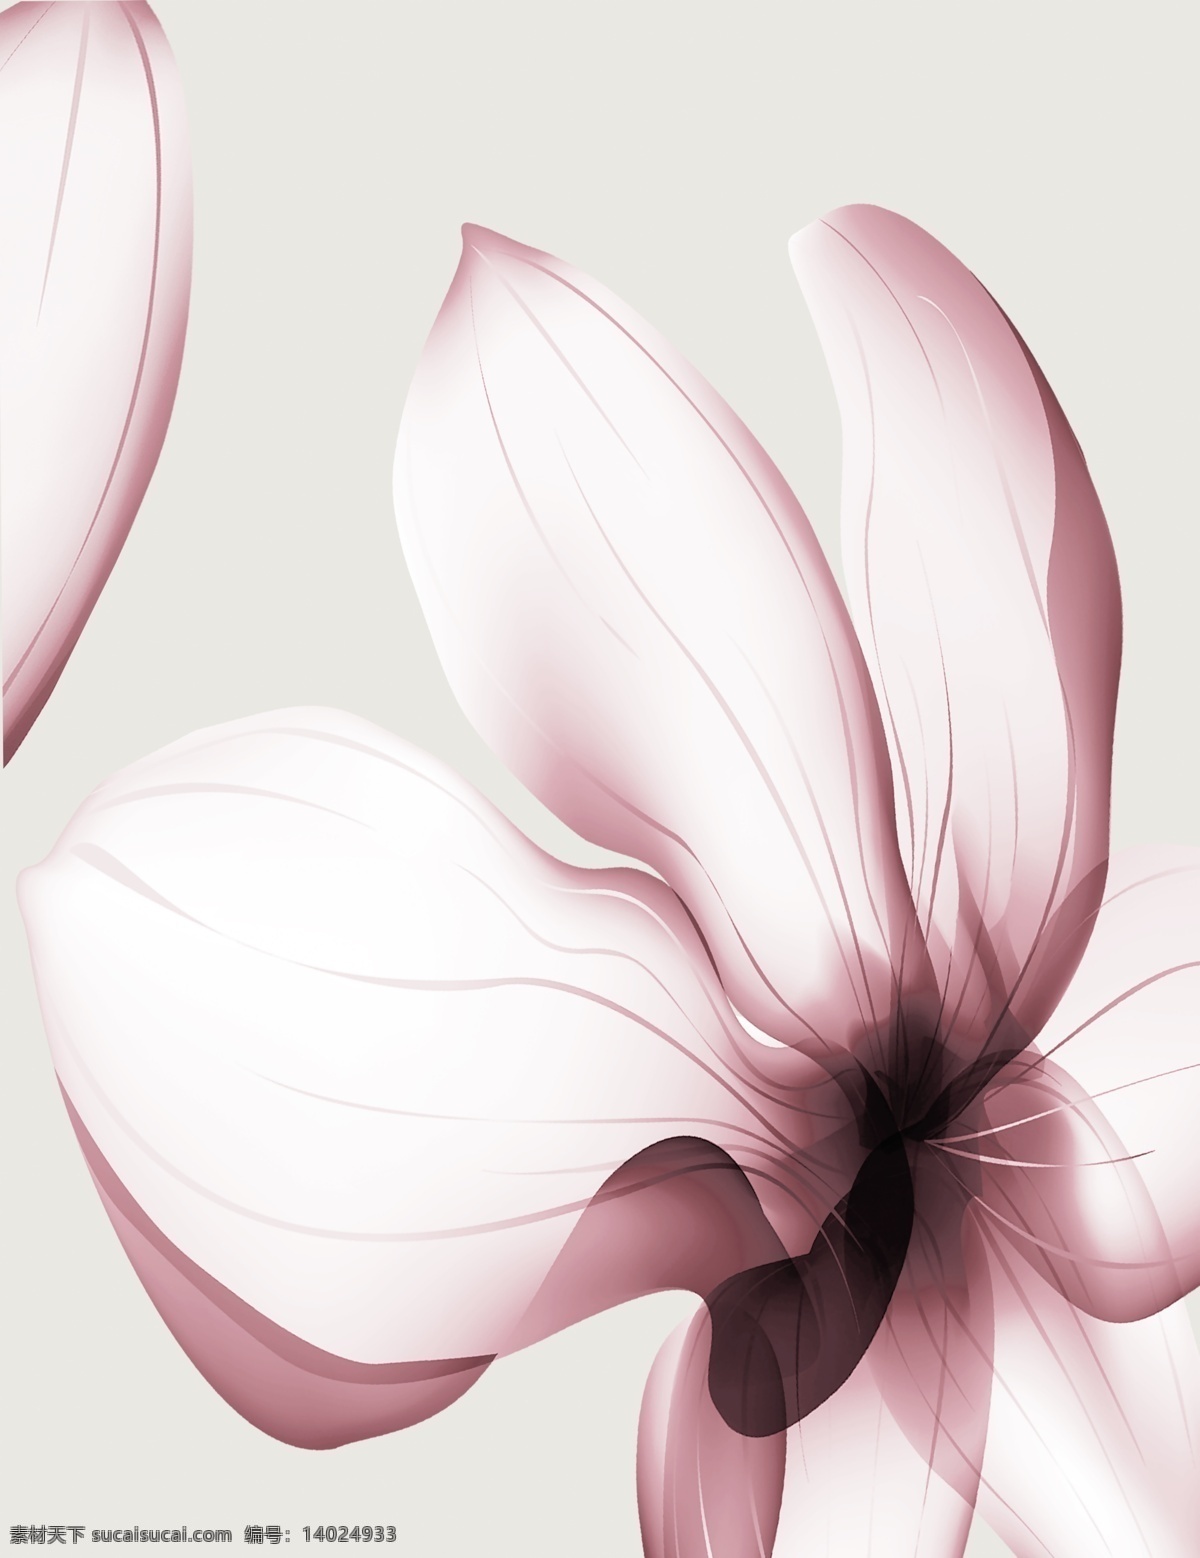 素雅花卉 素雅 手绘 花卉 时尚 现代 简洁 大方 背景 psd分层 底纹边框 移门图案